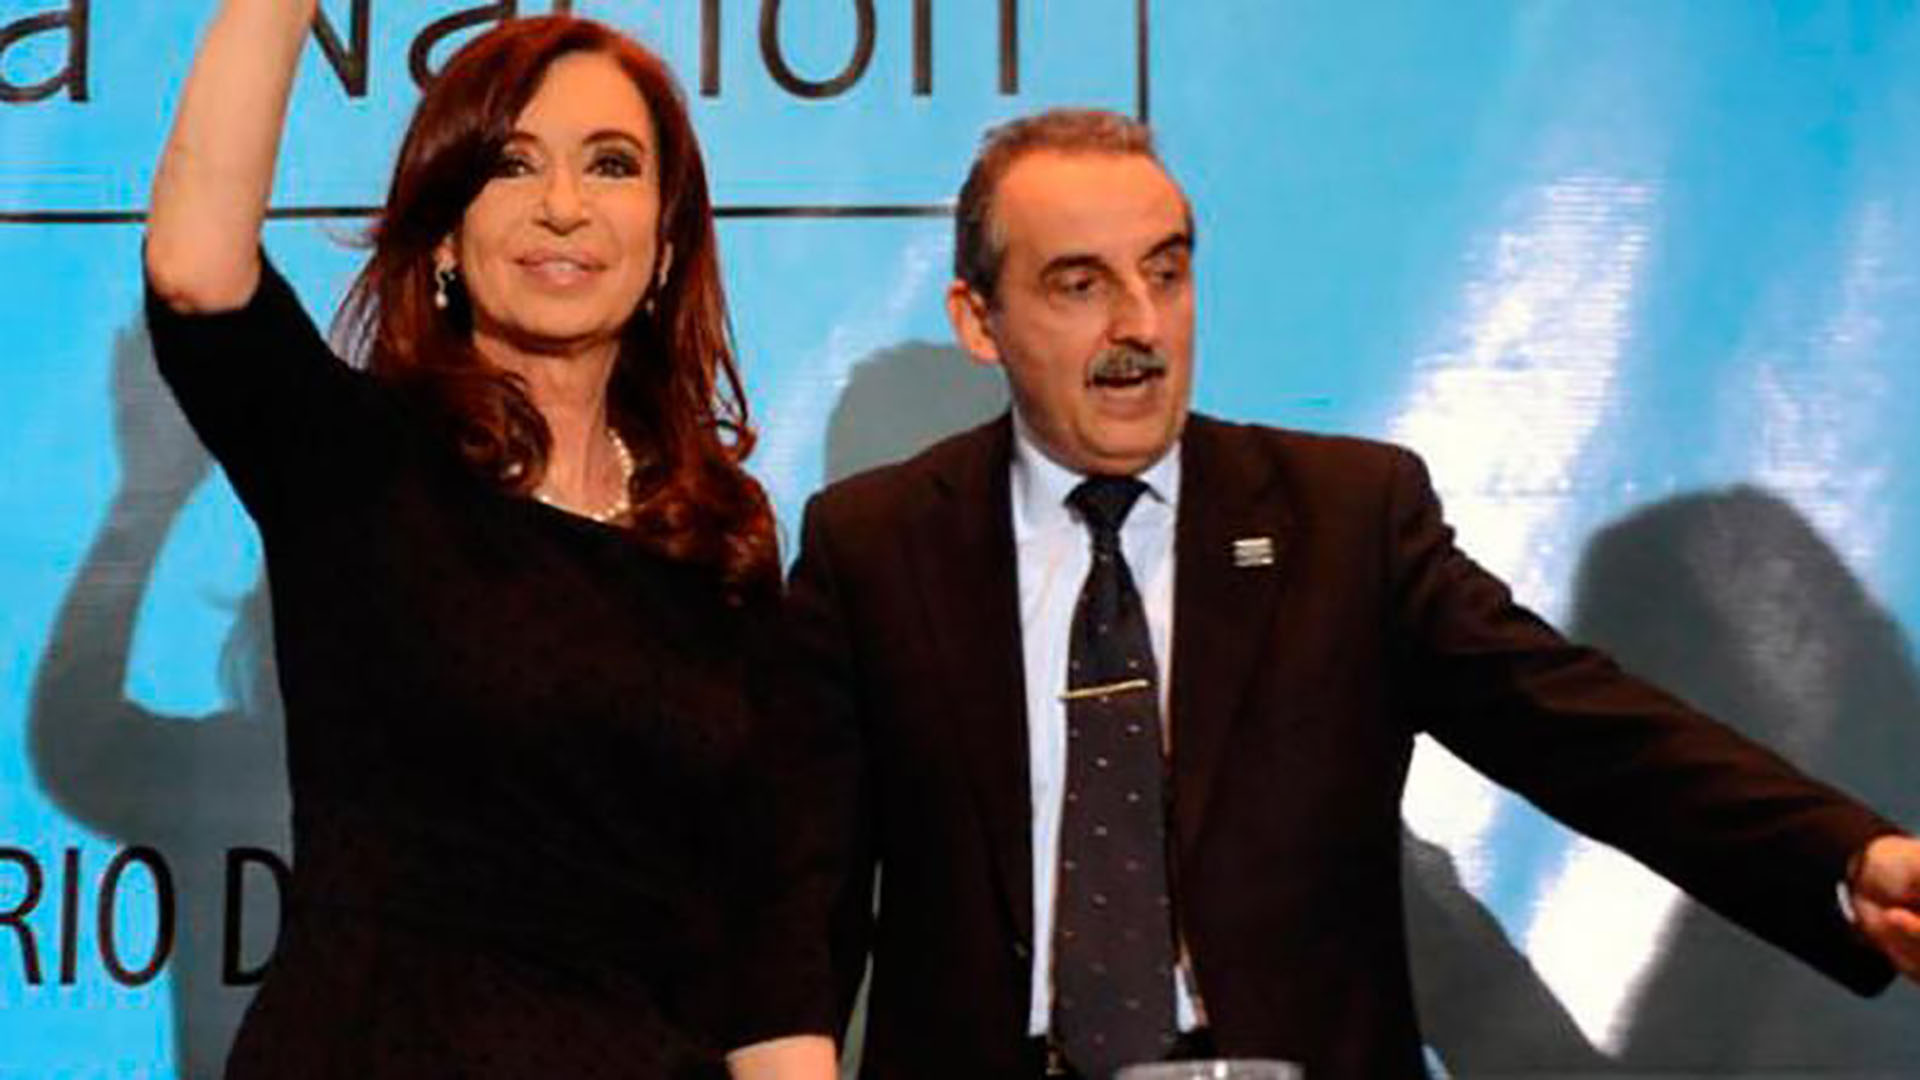 La presidenta Cristina Fernández de Kirchner decía que la pobreza casi había dejado de existir en el país, en los tiempos de Guillermo Moreno como secretario de Comercio